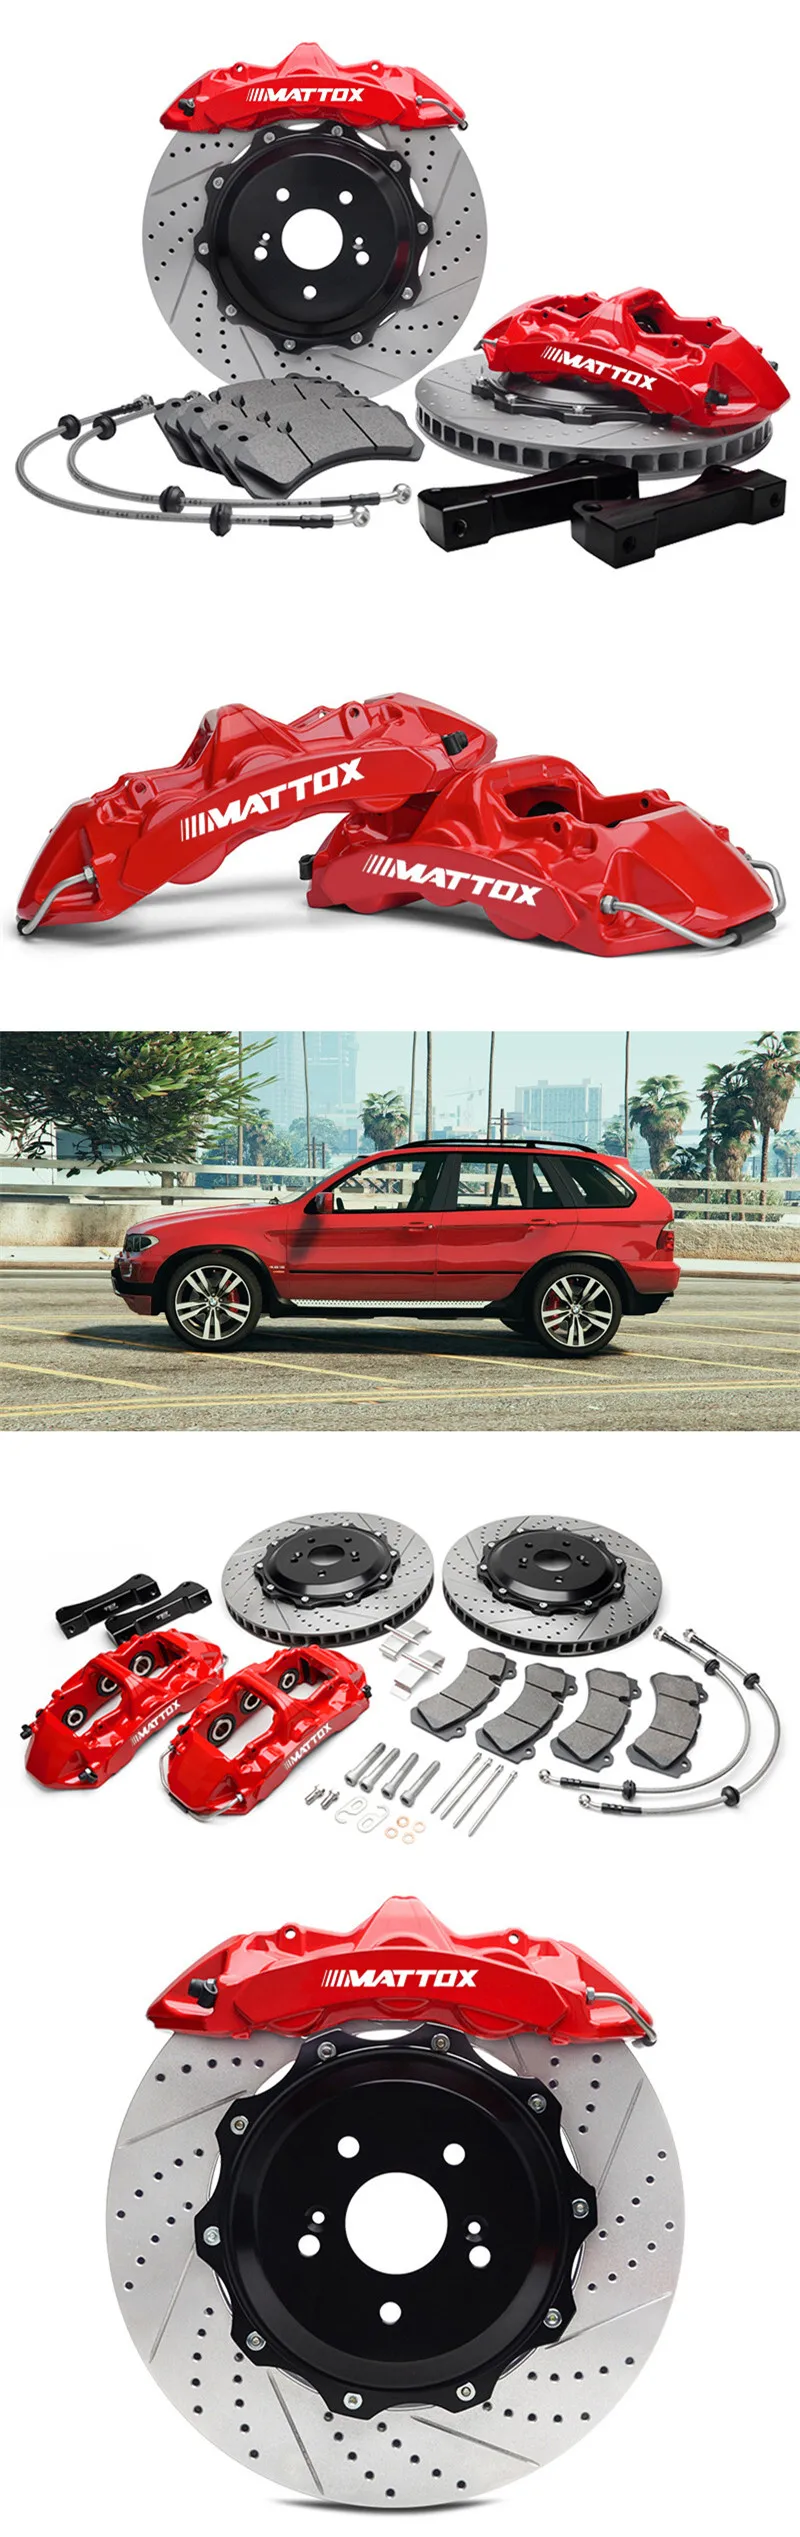 Mattox автомобильный гоночный тормозной комплект 6POT поршневой суппорт 405*34 мм диск передний тормозной ротор для BMW E53 2005 переднее колесо 20 дюймов